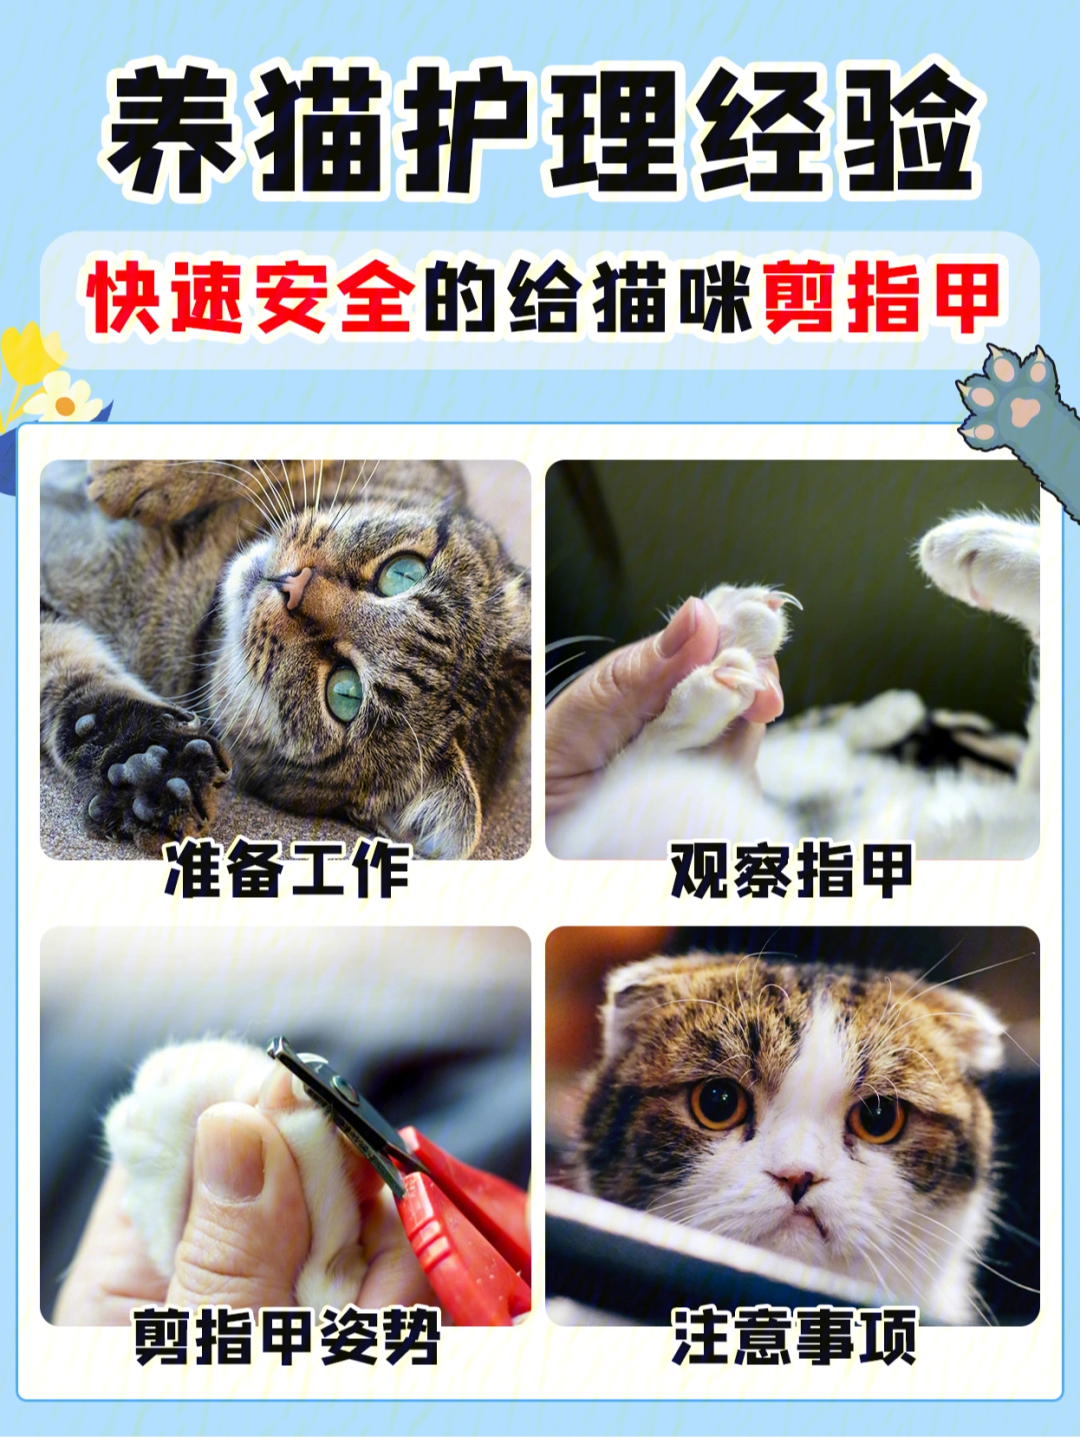 给猫剪指甲的技巧图解图片